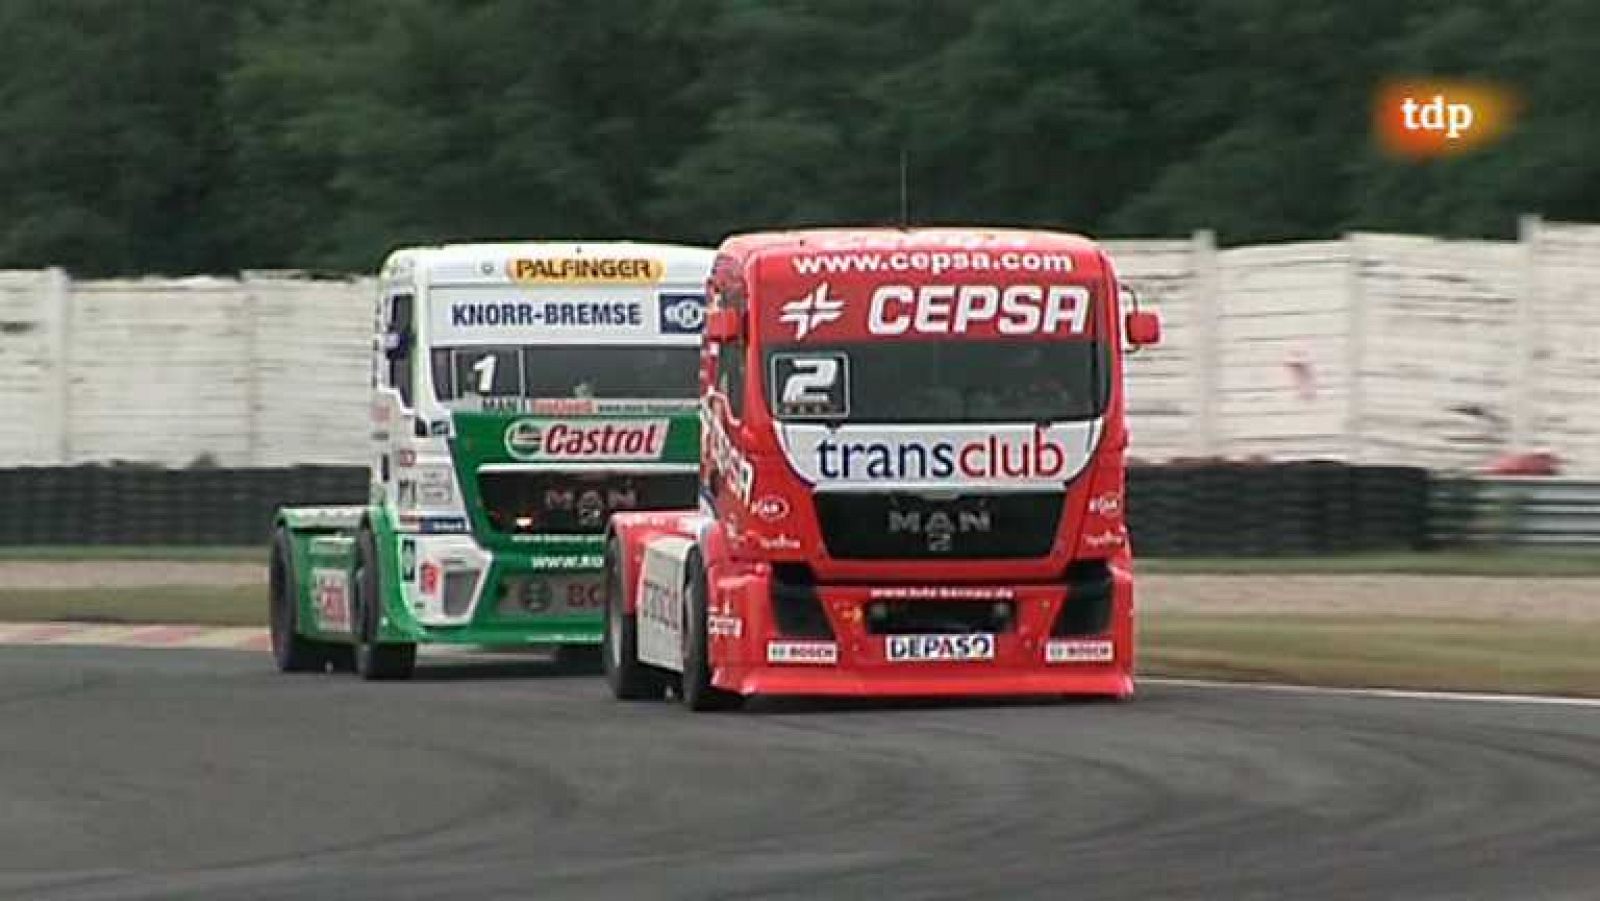 Carreras de camiones - Campeonato de Europa - República Checa